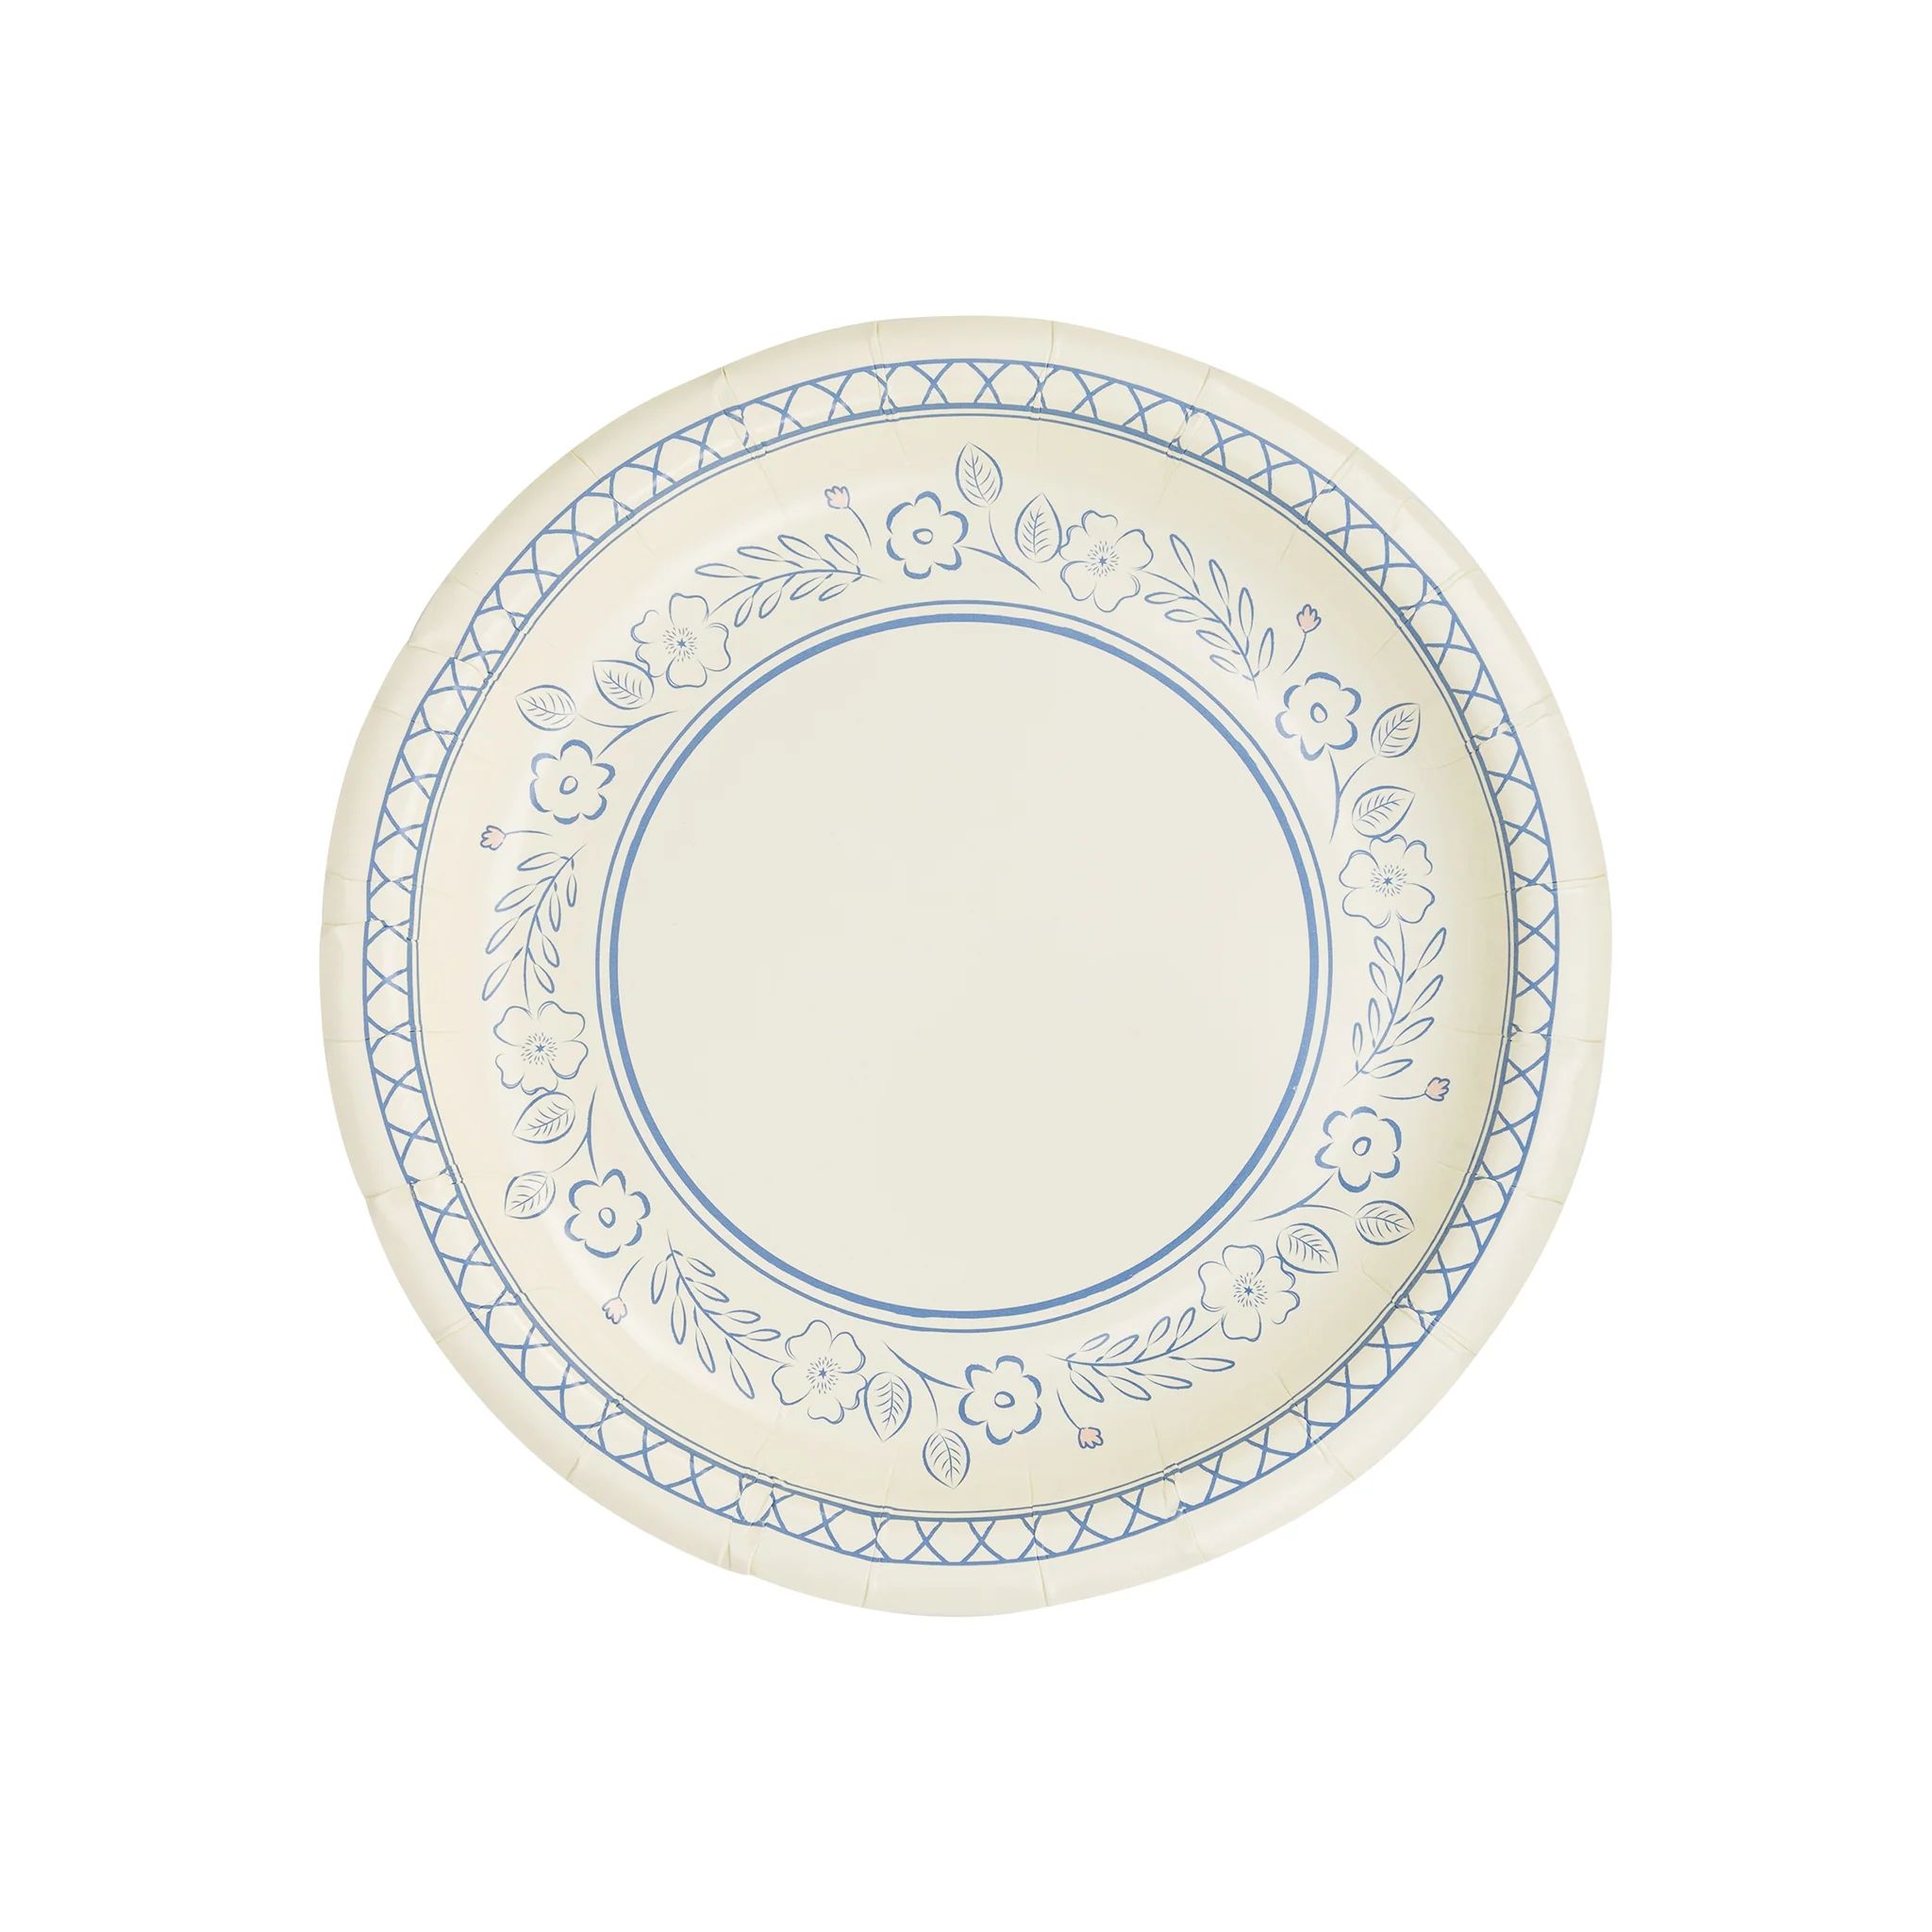 Pembroke Floral 7" Paper Dessert Plate | My Mind's Eye